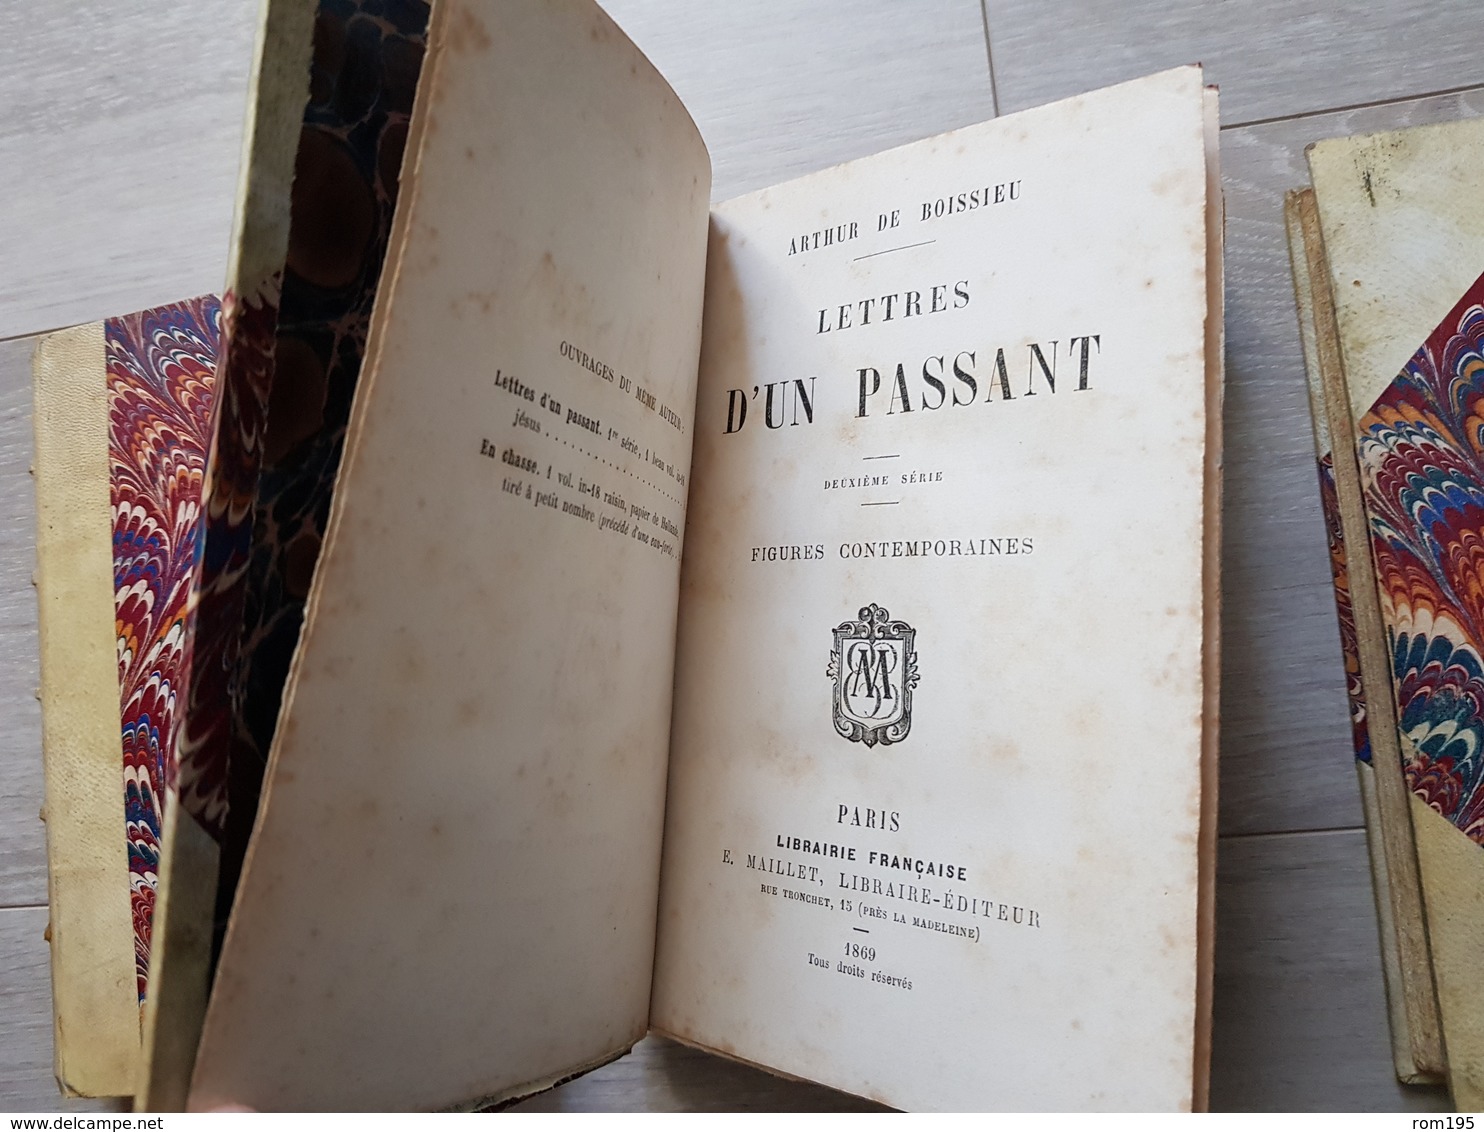 3 tomes d'Arthur de Boissieu Lettres d'un Passant